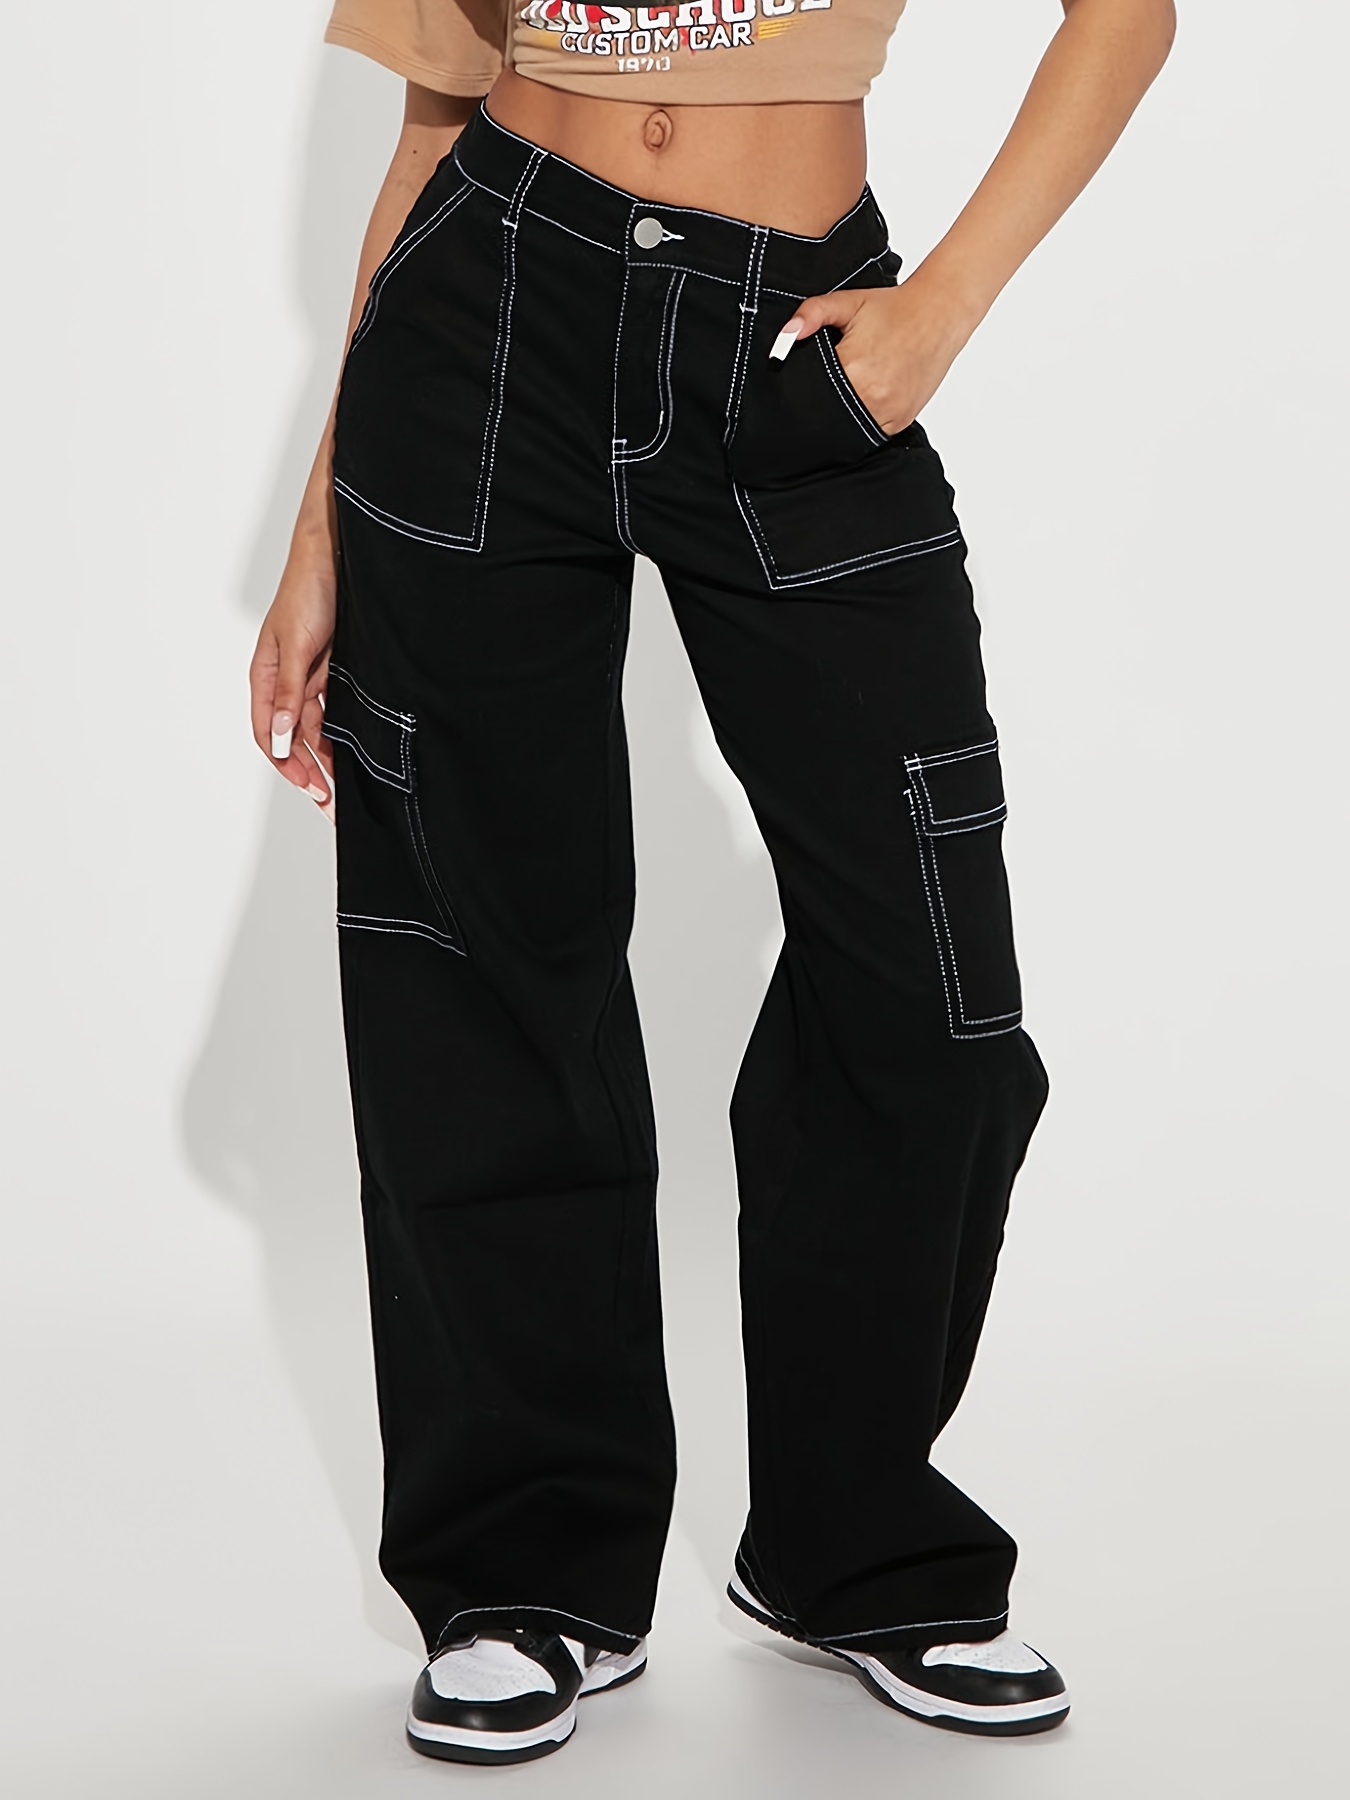 Jeans negros ajustados a las piernas, pantalones de mezclilla elastizados  con botones y bolsillos diagonales, pantalones de mezclilla para mujer